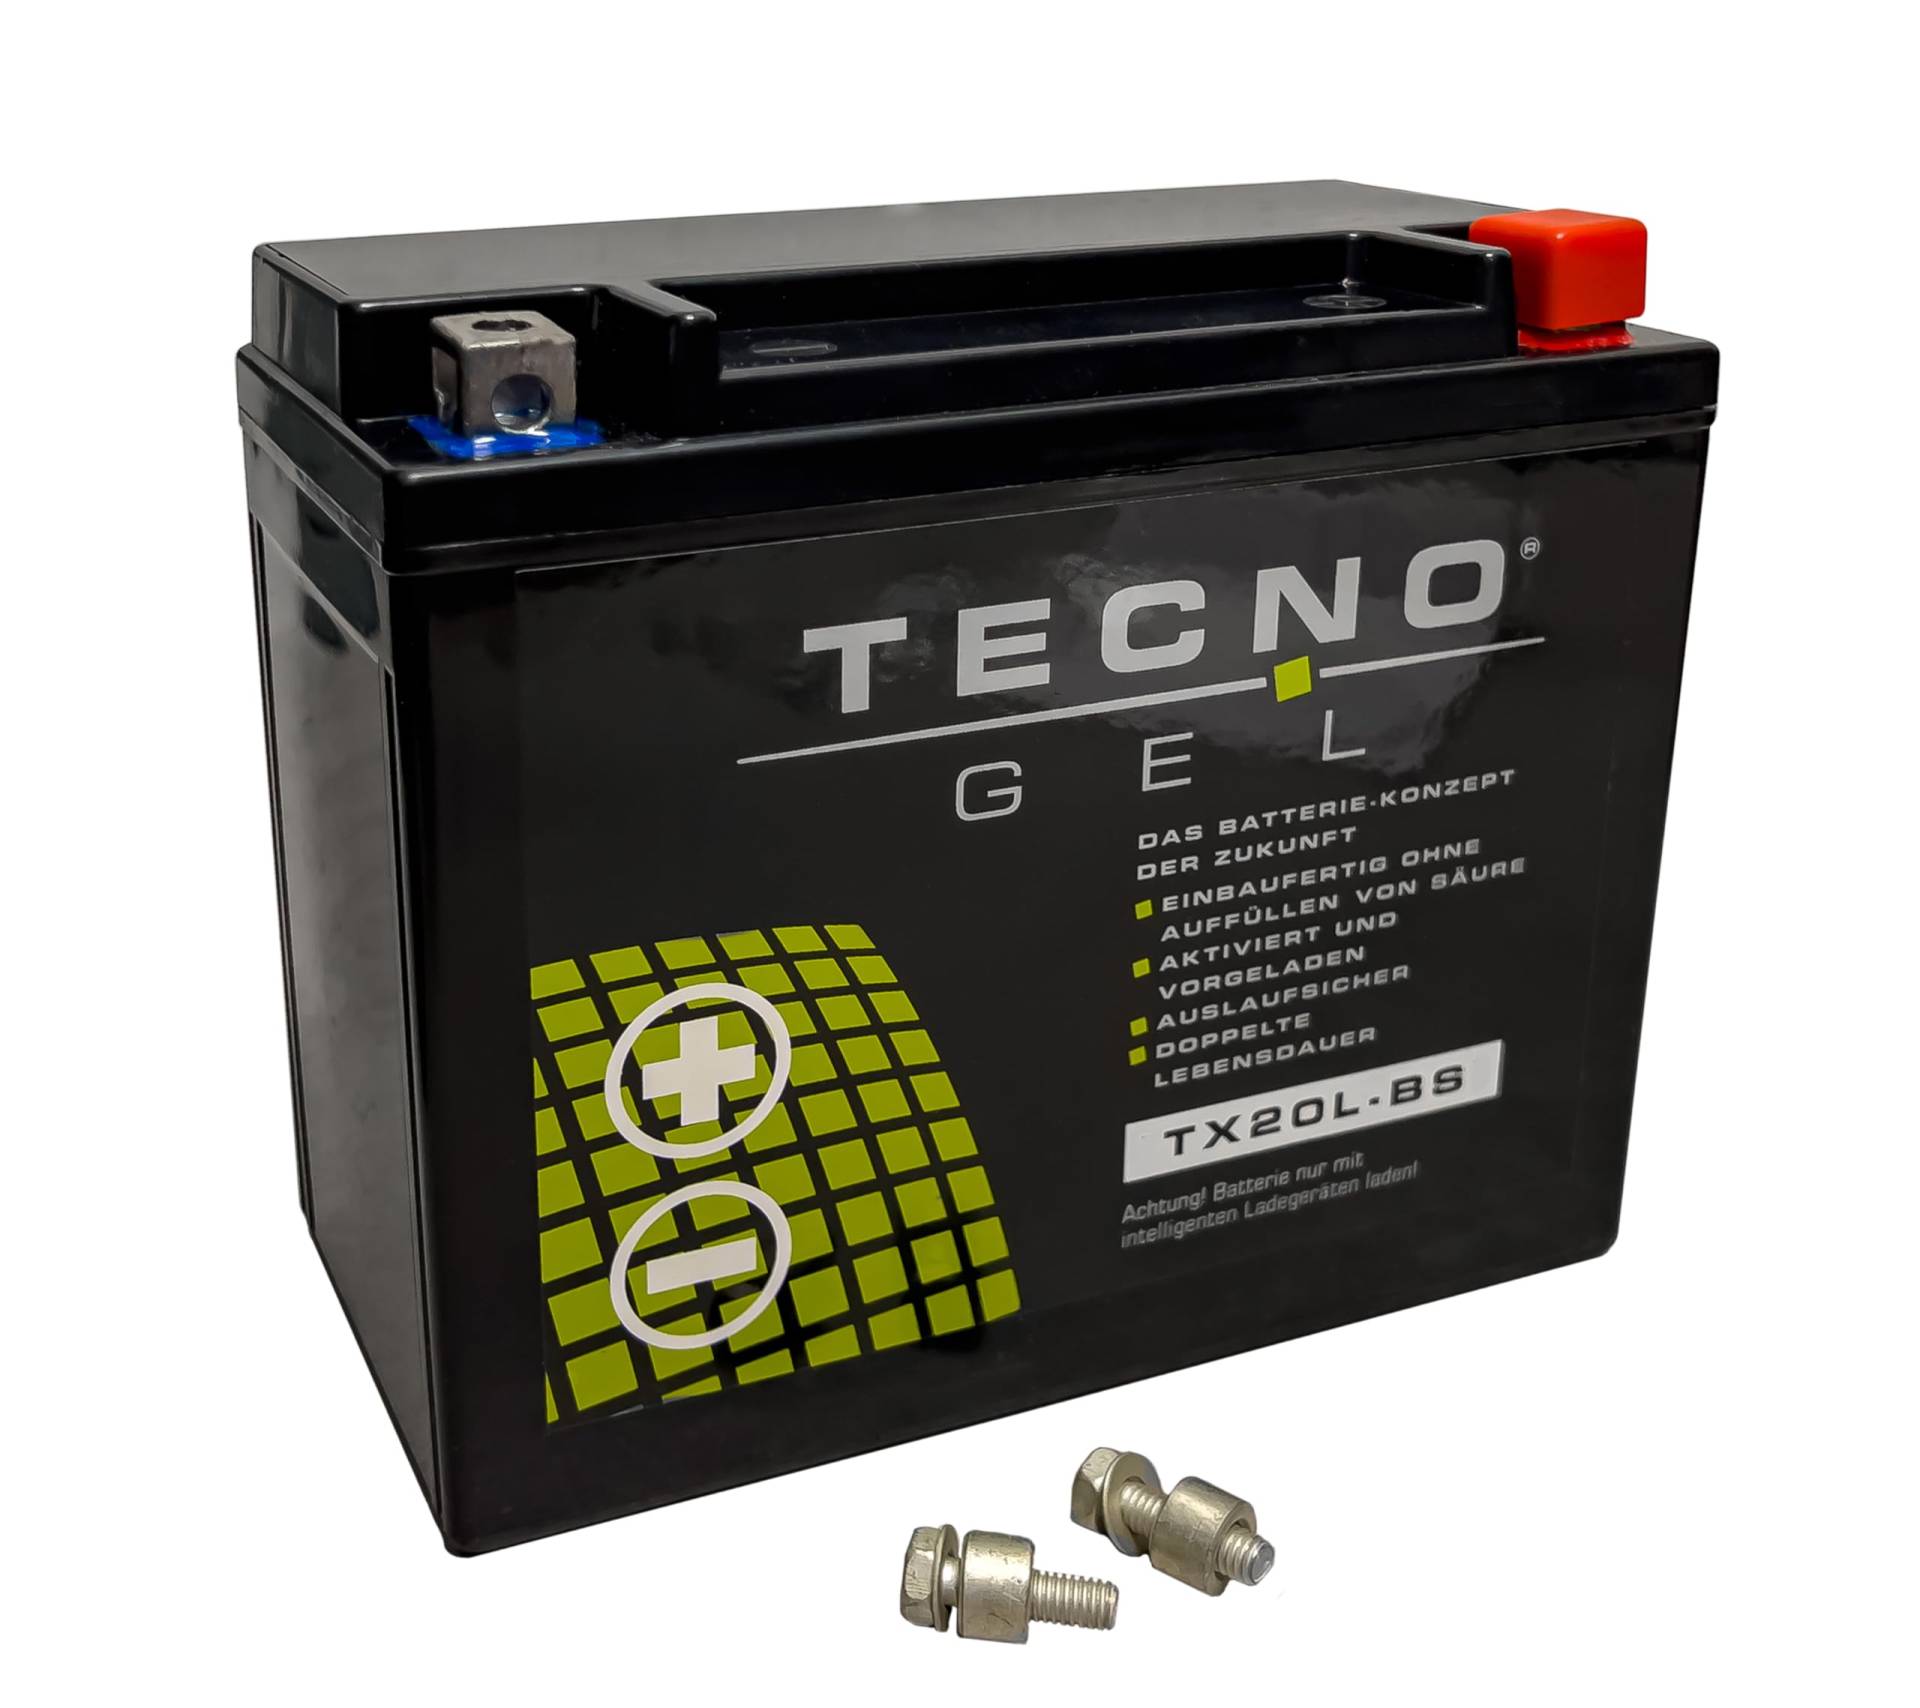 TECNO-GEL Motorrad-Batterie für YTX20L-BS für HARLEY DAVIDSON FLD/FLS 1690 u. 1800 2012-2017, 12V Gel-Batterie 20Ah (DIN 82000), 175x87x155 mm von Wirth-Federn